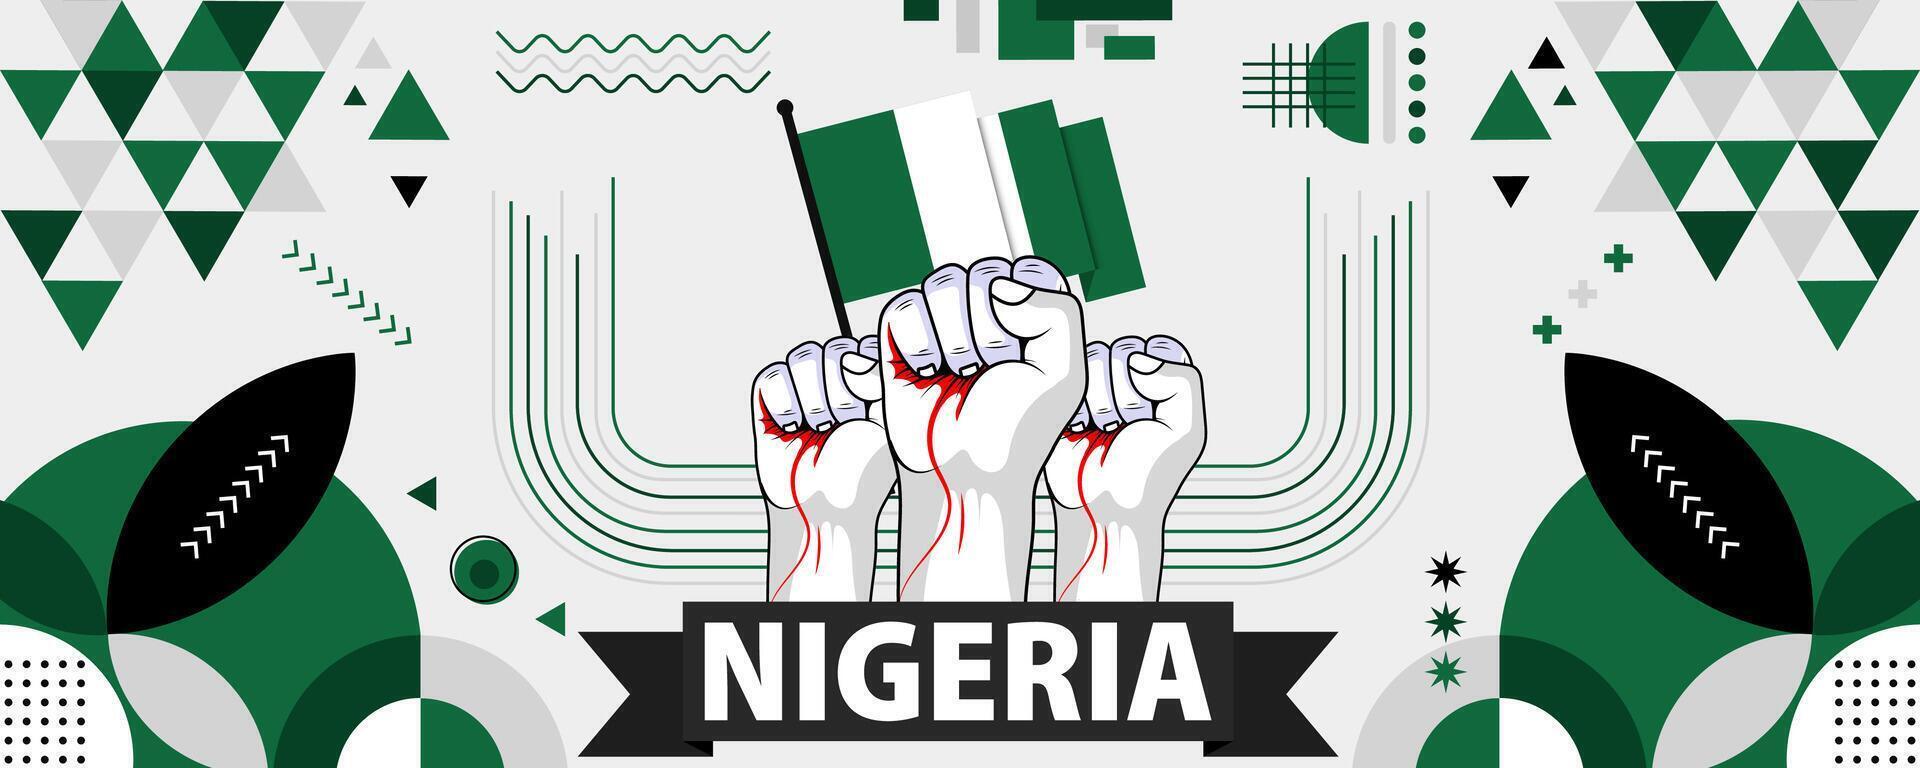 Nigeria nationale ou indépendance journée bannière pour pays fête. drapeau de Nigeria avec élevé poings. moderne rétro conception avec typorgaphie abstrait géométrique Icônes. vecteur illustration.